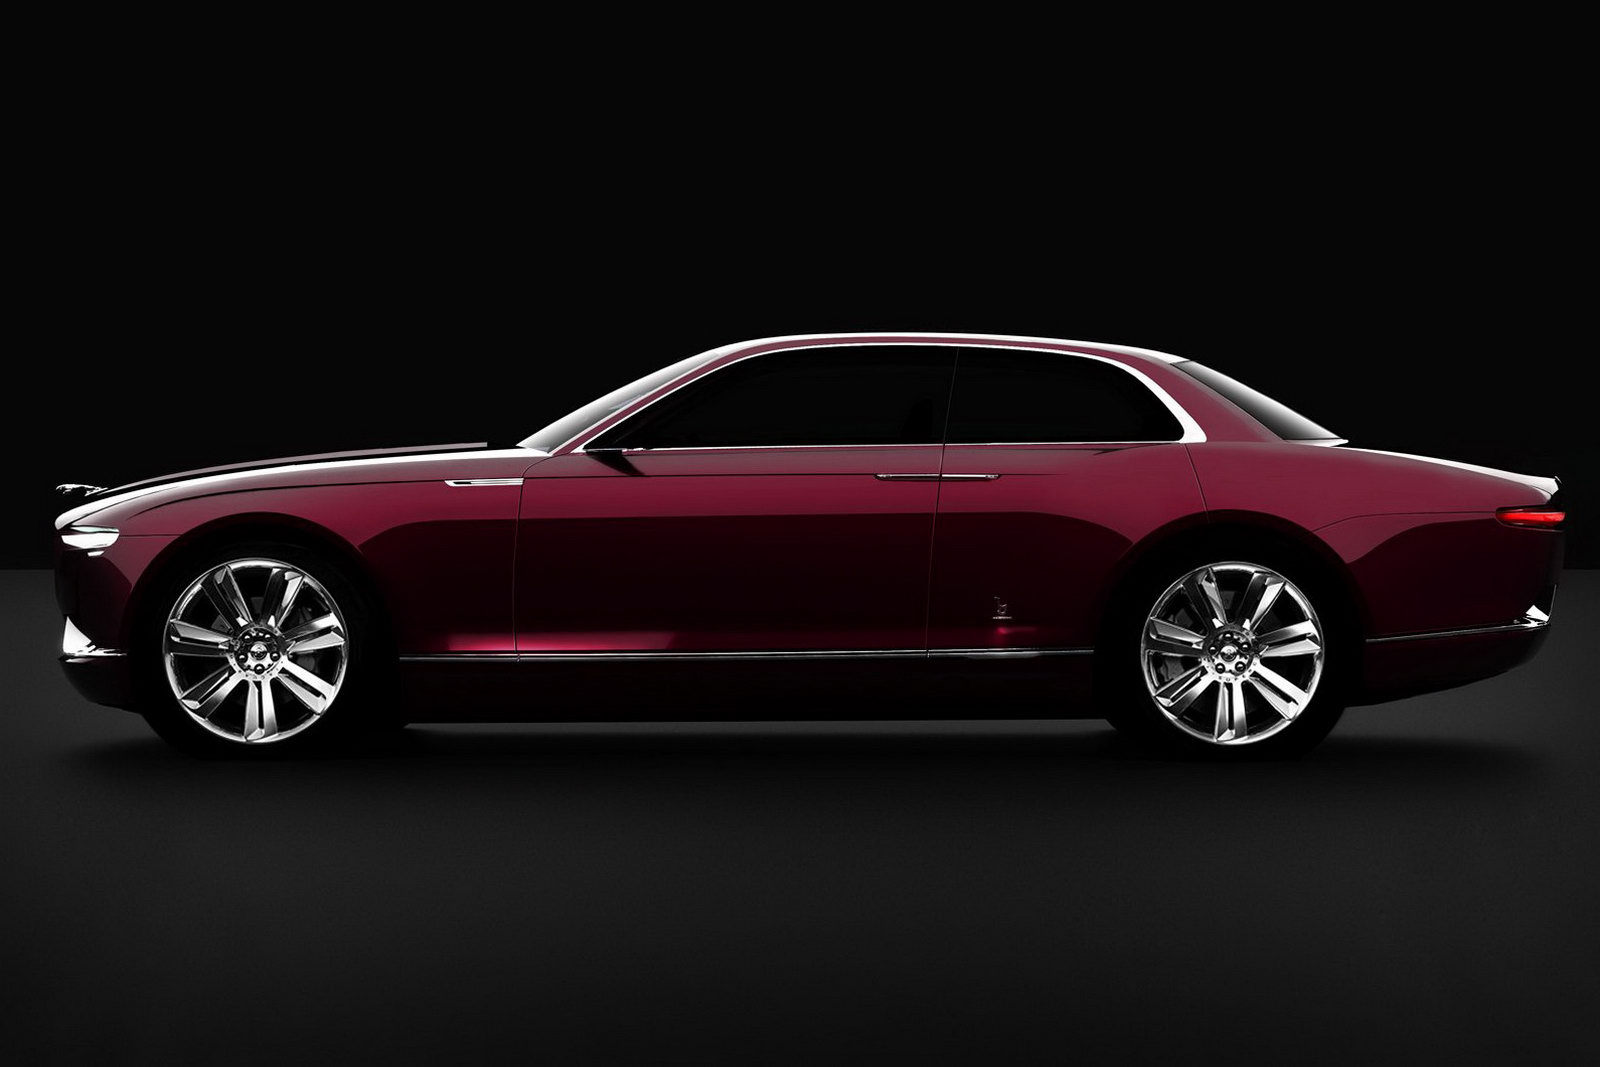 Conceptul Bertone Jaguar readuce in actualitate stilul sobru si rasat al berlinelor britanice de alta data